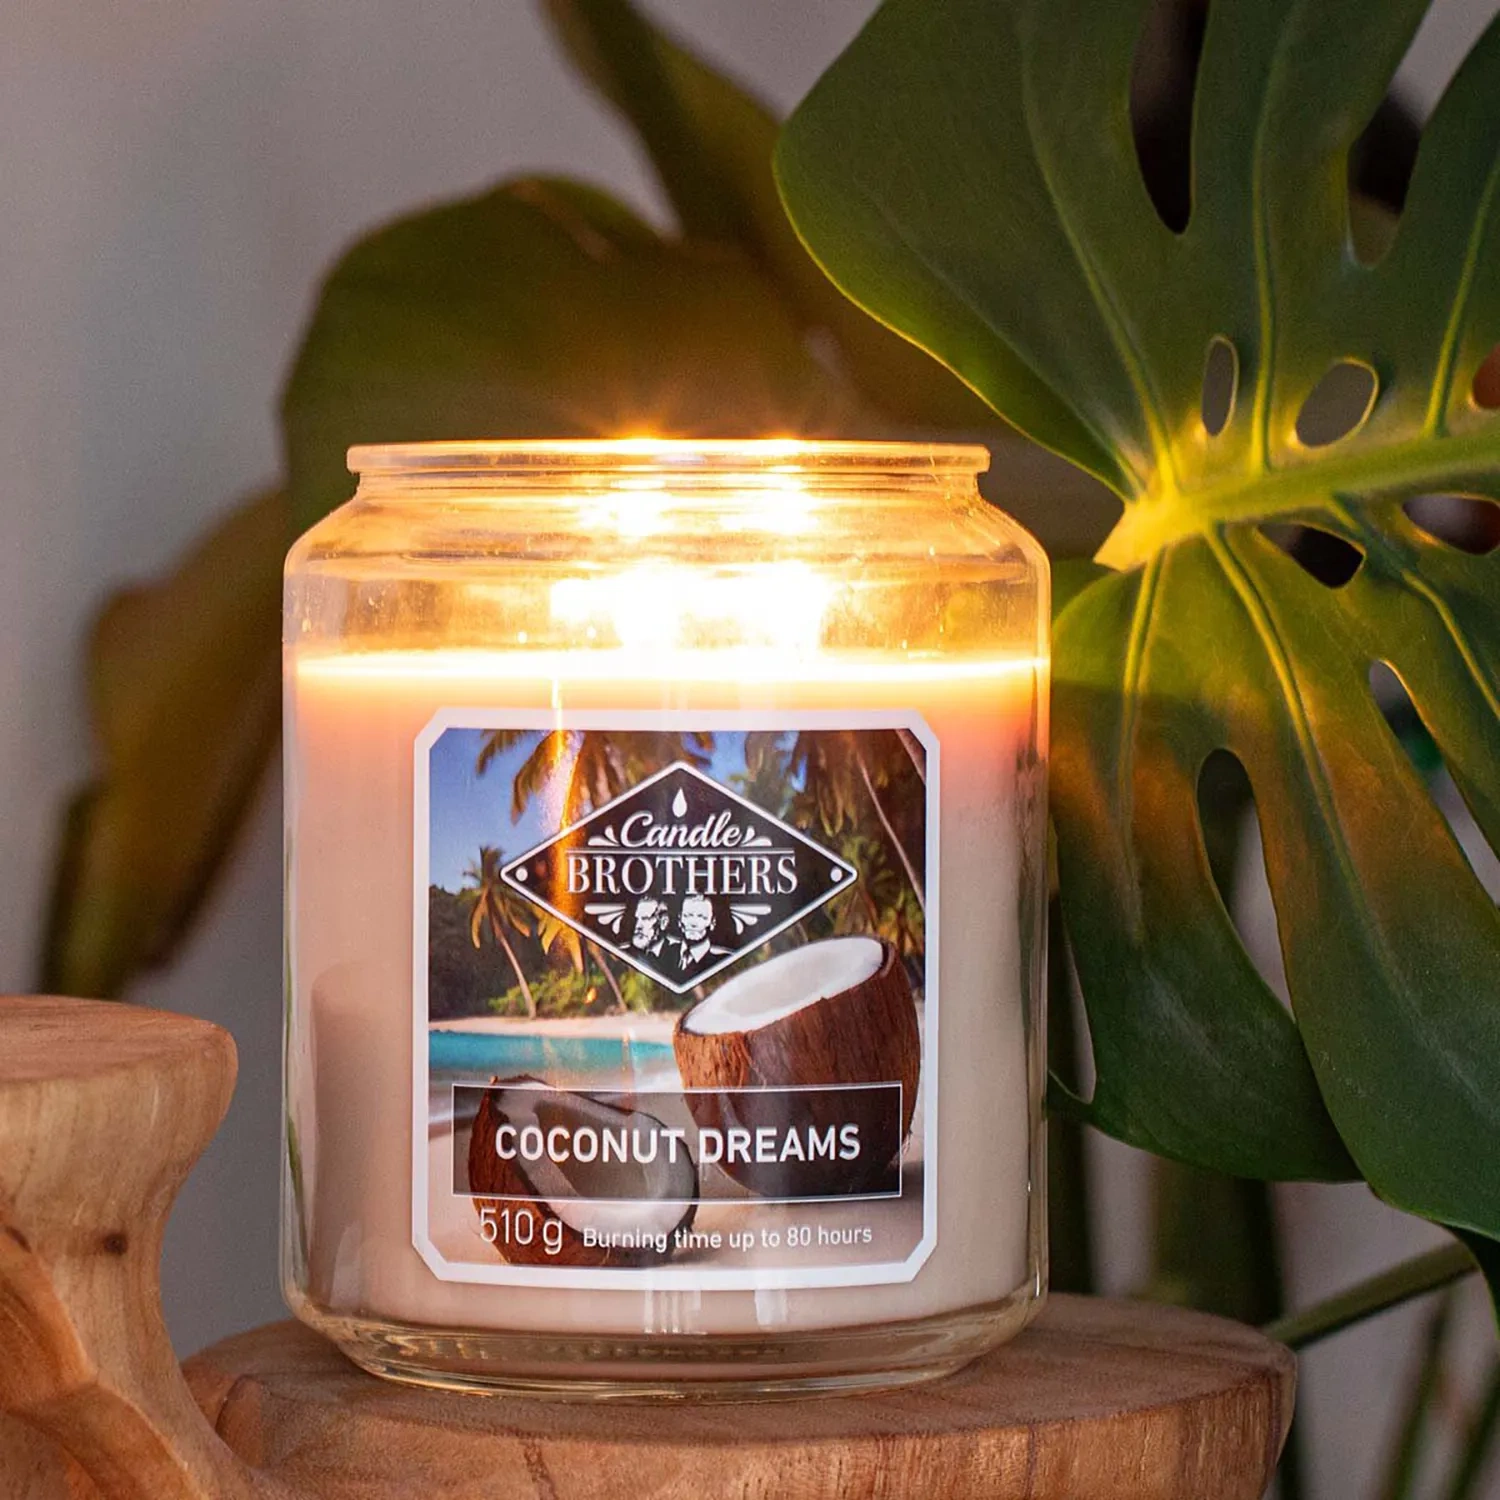 Le migliori candele al profumo di cocco per l'estate